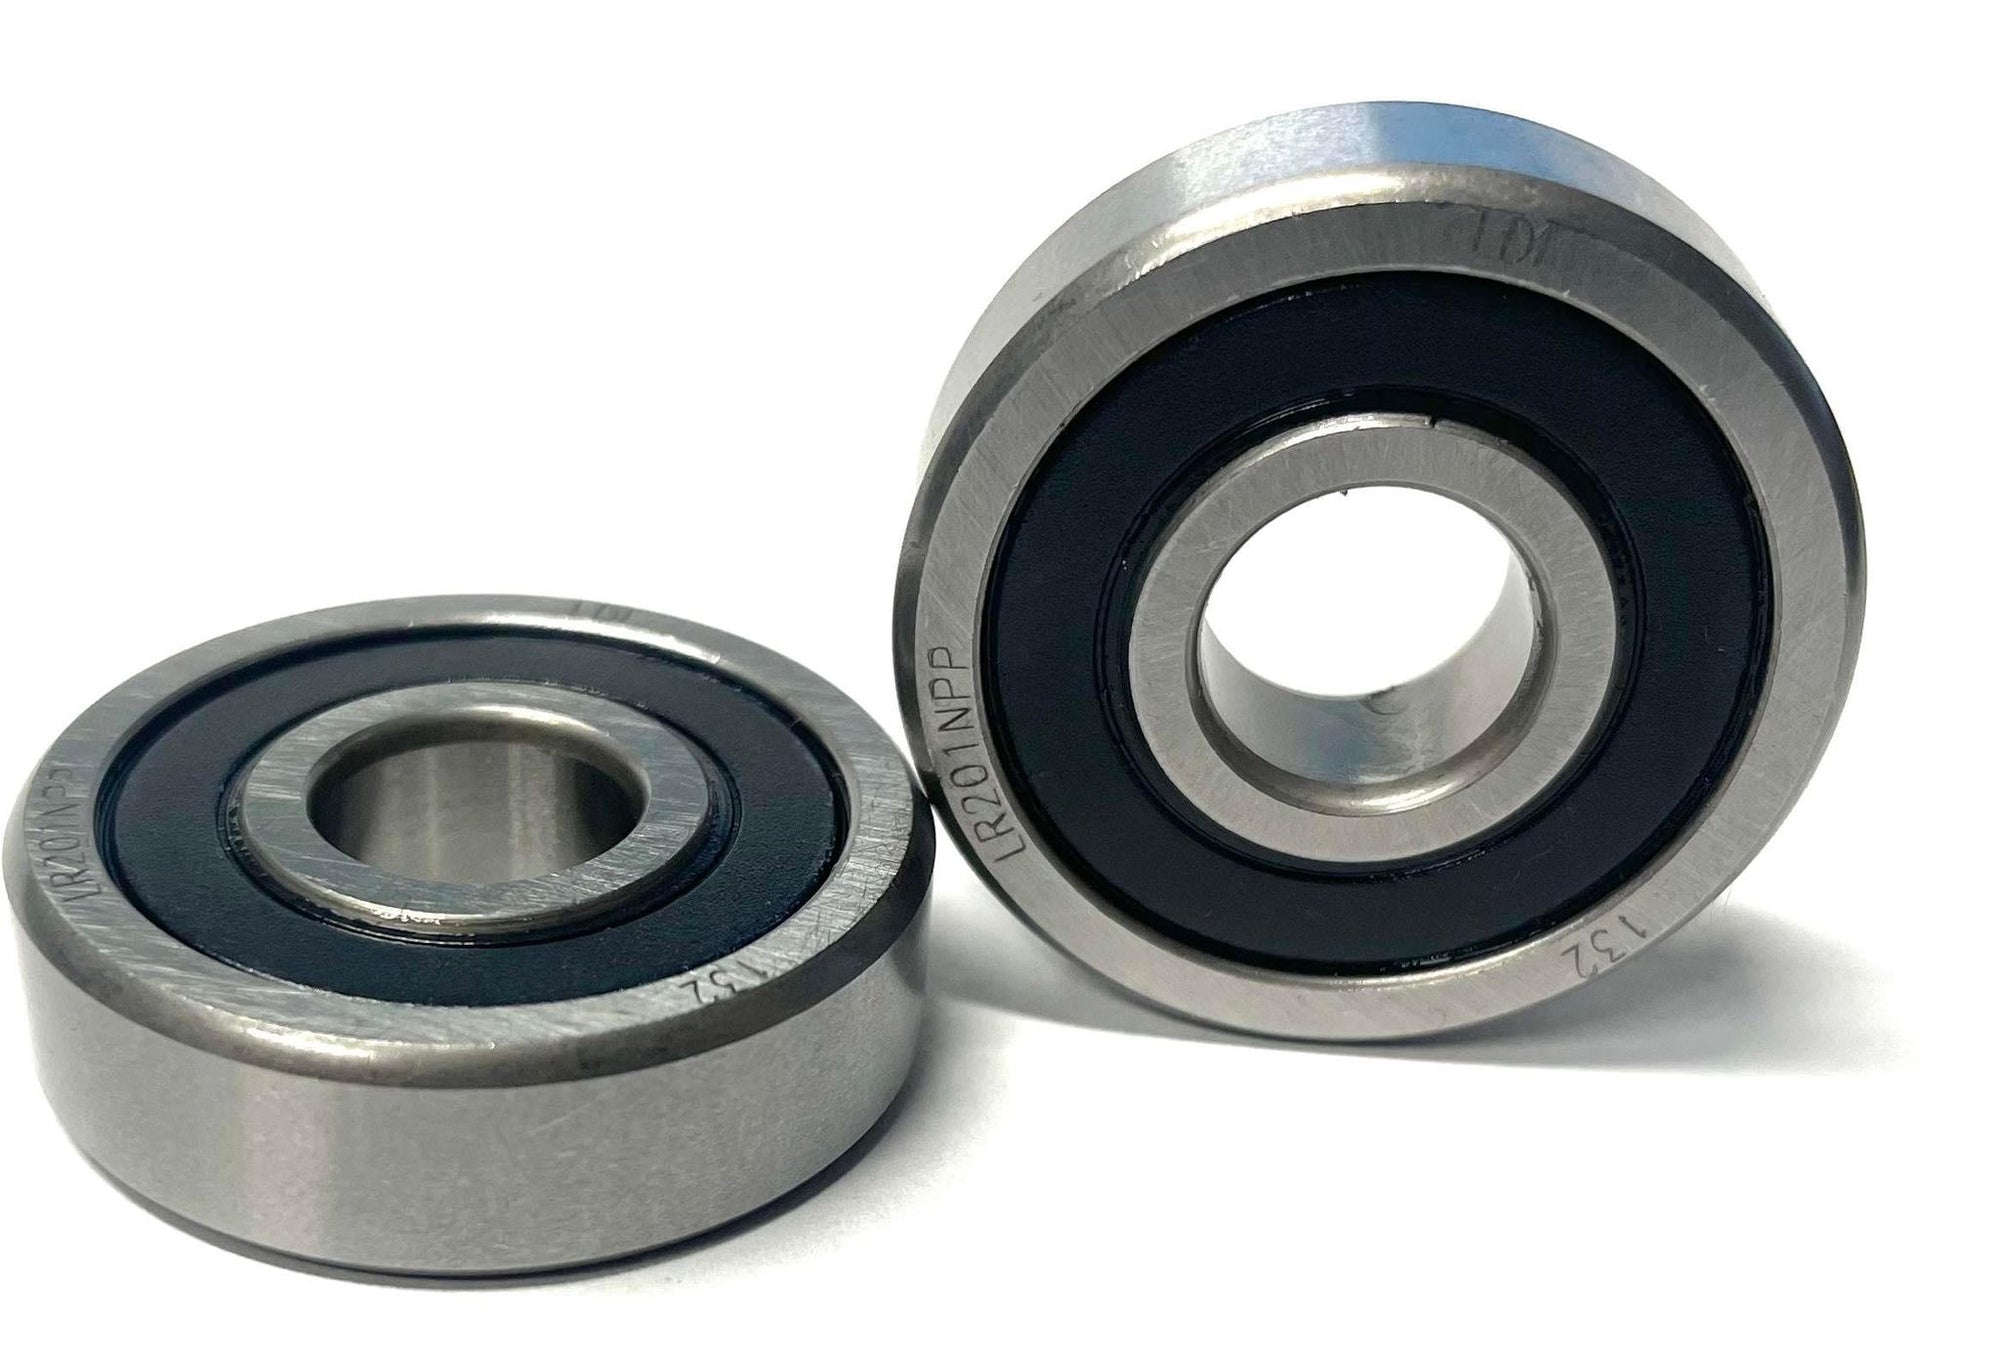 ZUMA 12mm wheel bearings